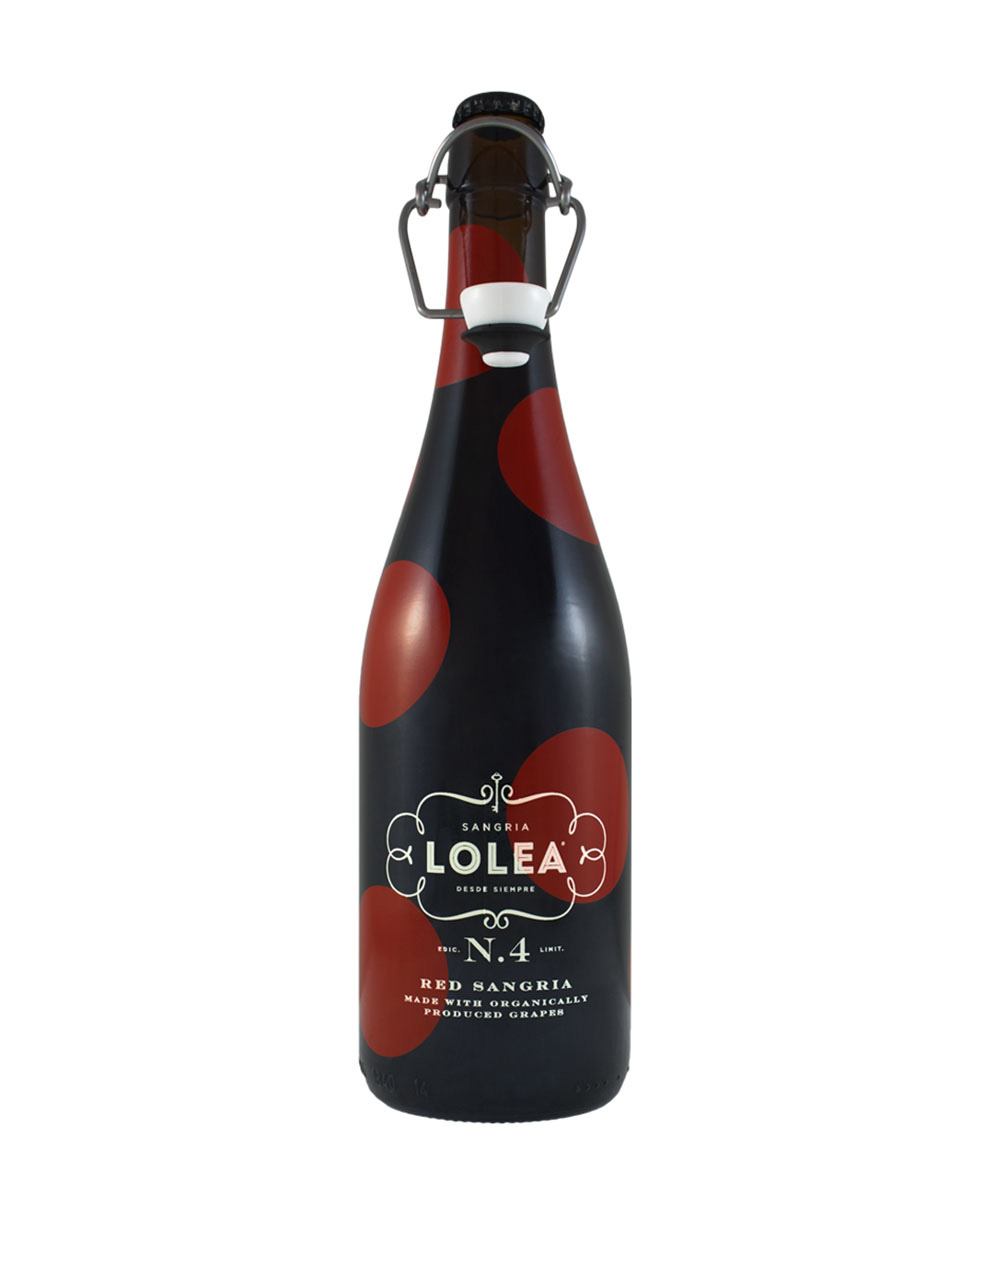 Lolea No. 4 Red Sangria Vino de Espana Spain